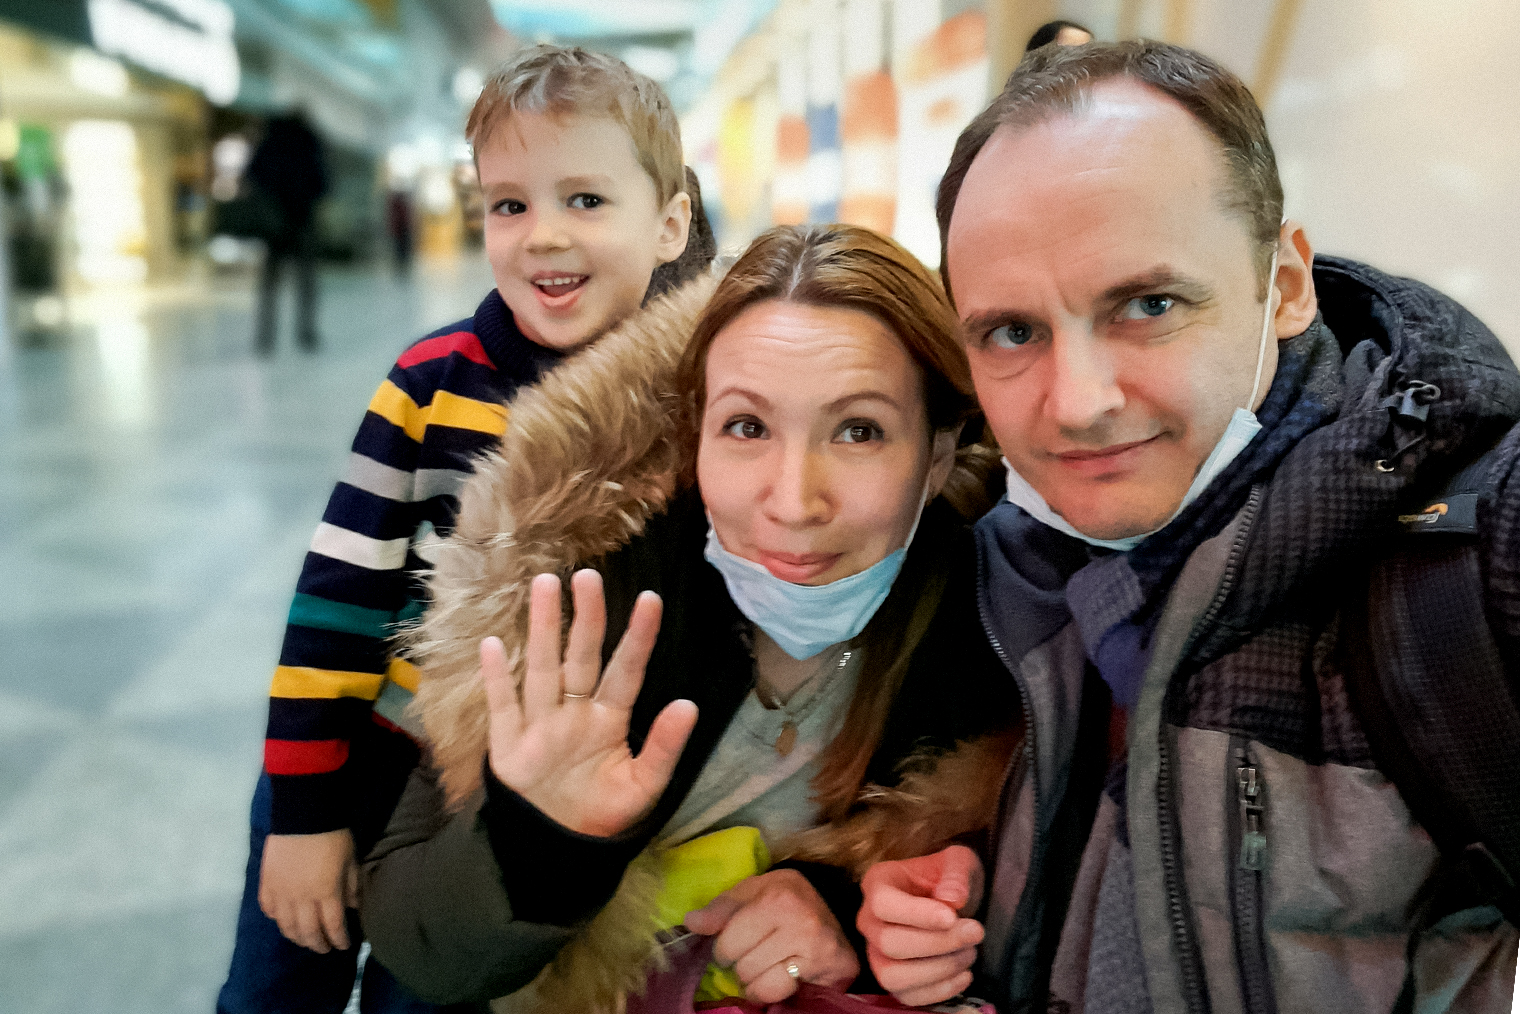 Мы с женой Наталией и сыном Мишей в аэропорту в Хельсинки. Наш автобус из Санкт-Петербурга задержался на финской границе. На рейс до Парижа мы успели по счастливой случайности: его тоже задержали